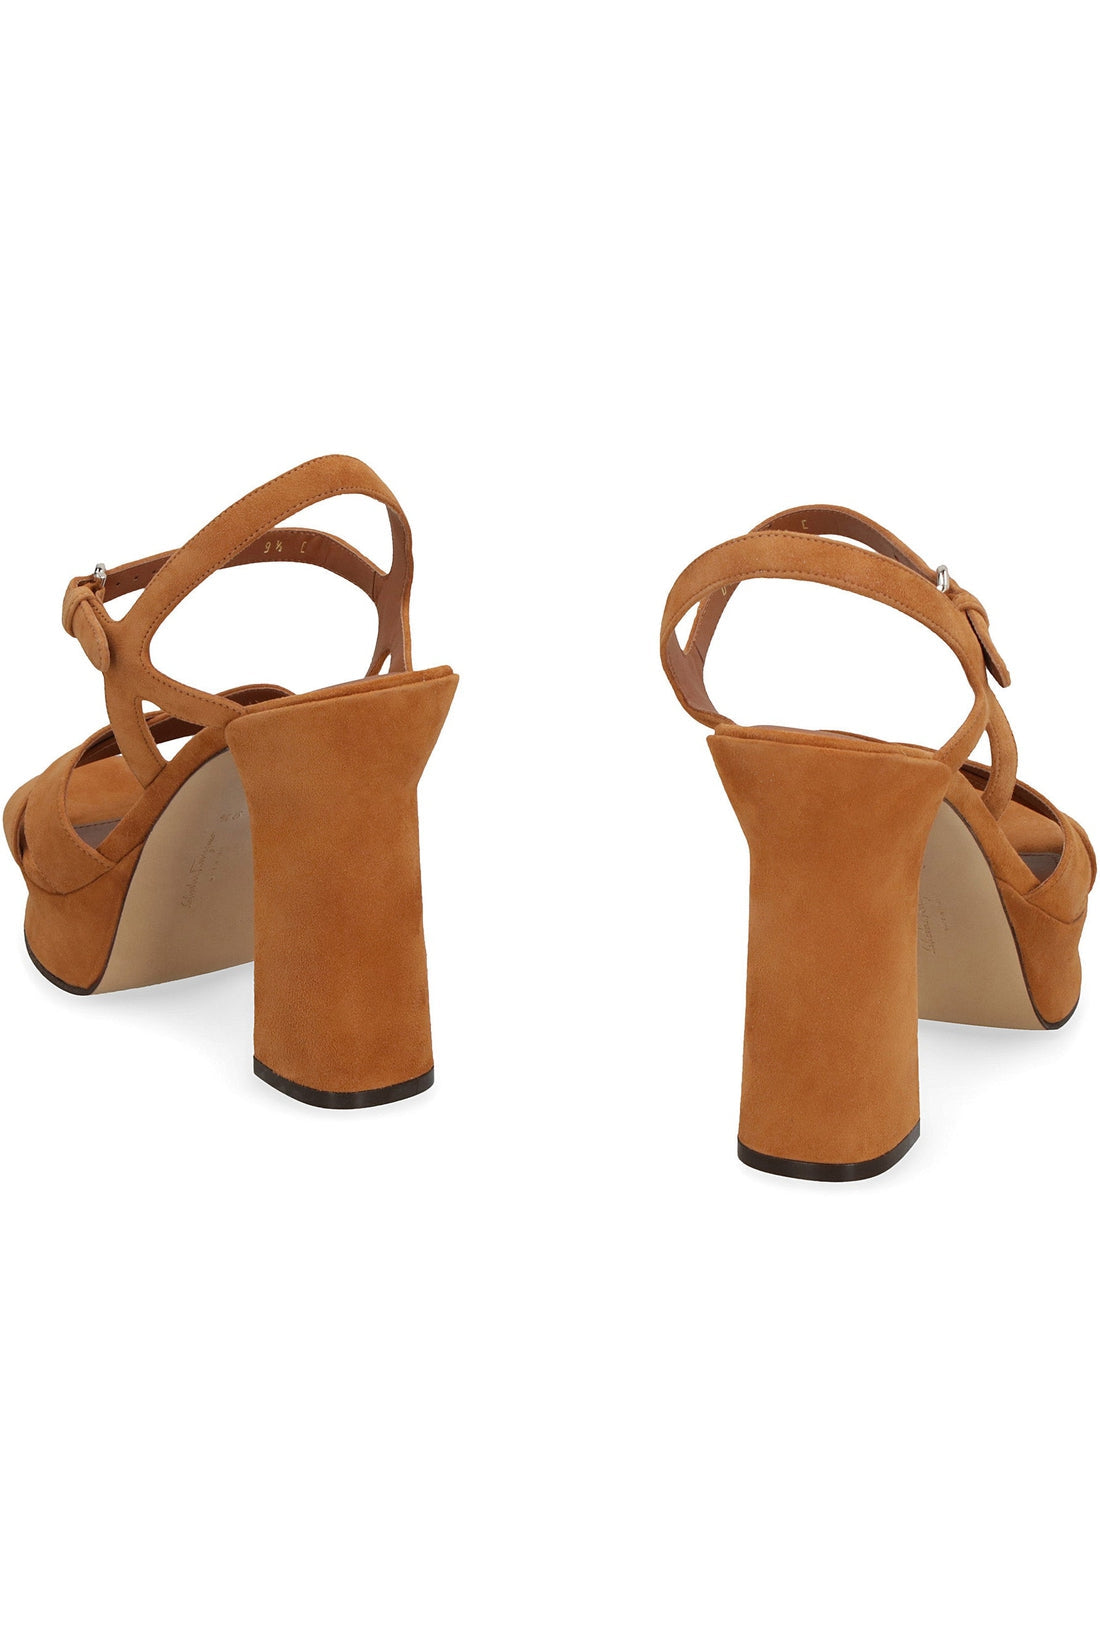 FERRAGAMO-OUTLET-SALE-Leather platform sandals-ARCHIVIST